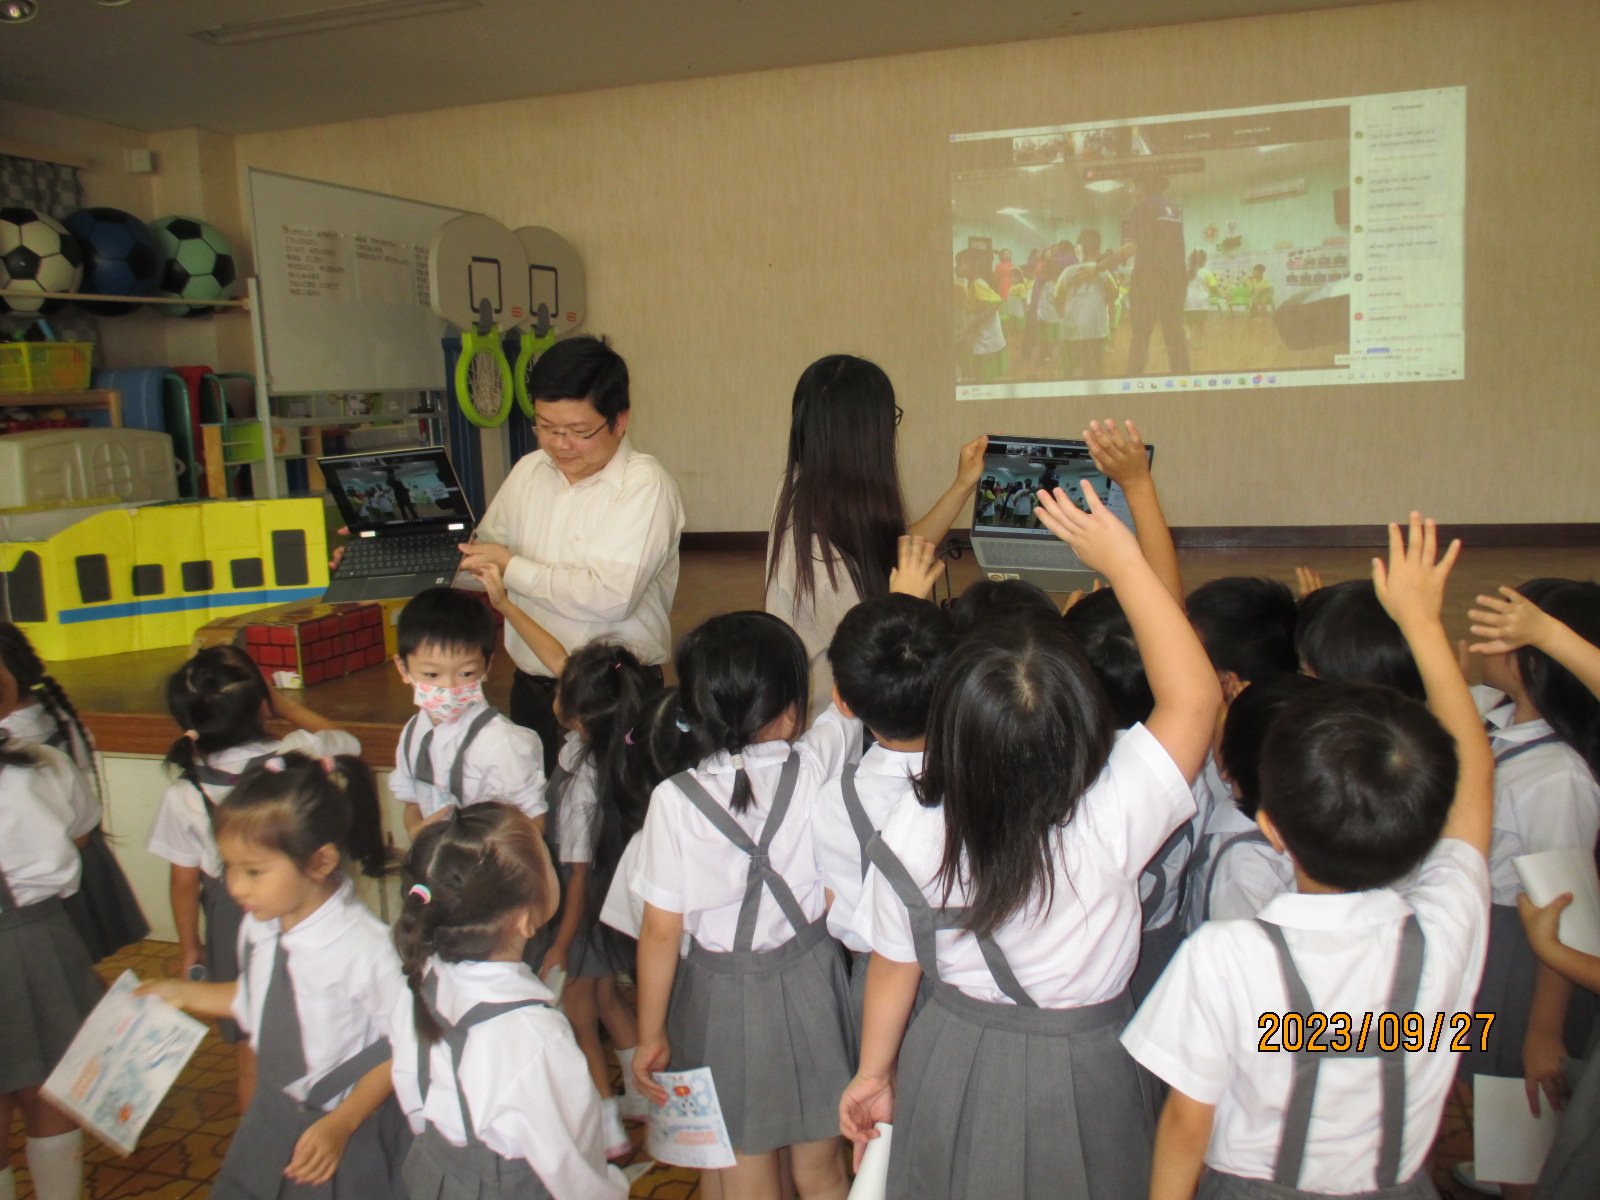 ベトナムの幼稚園のお友達、留学生の皆さん  今日は、楽しい時間をありがとうございました。